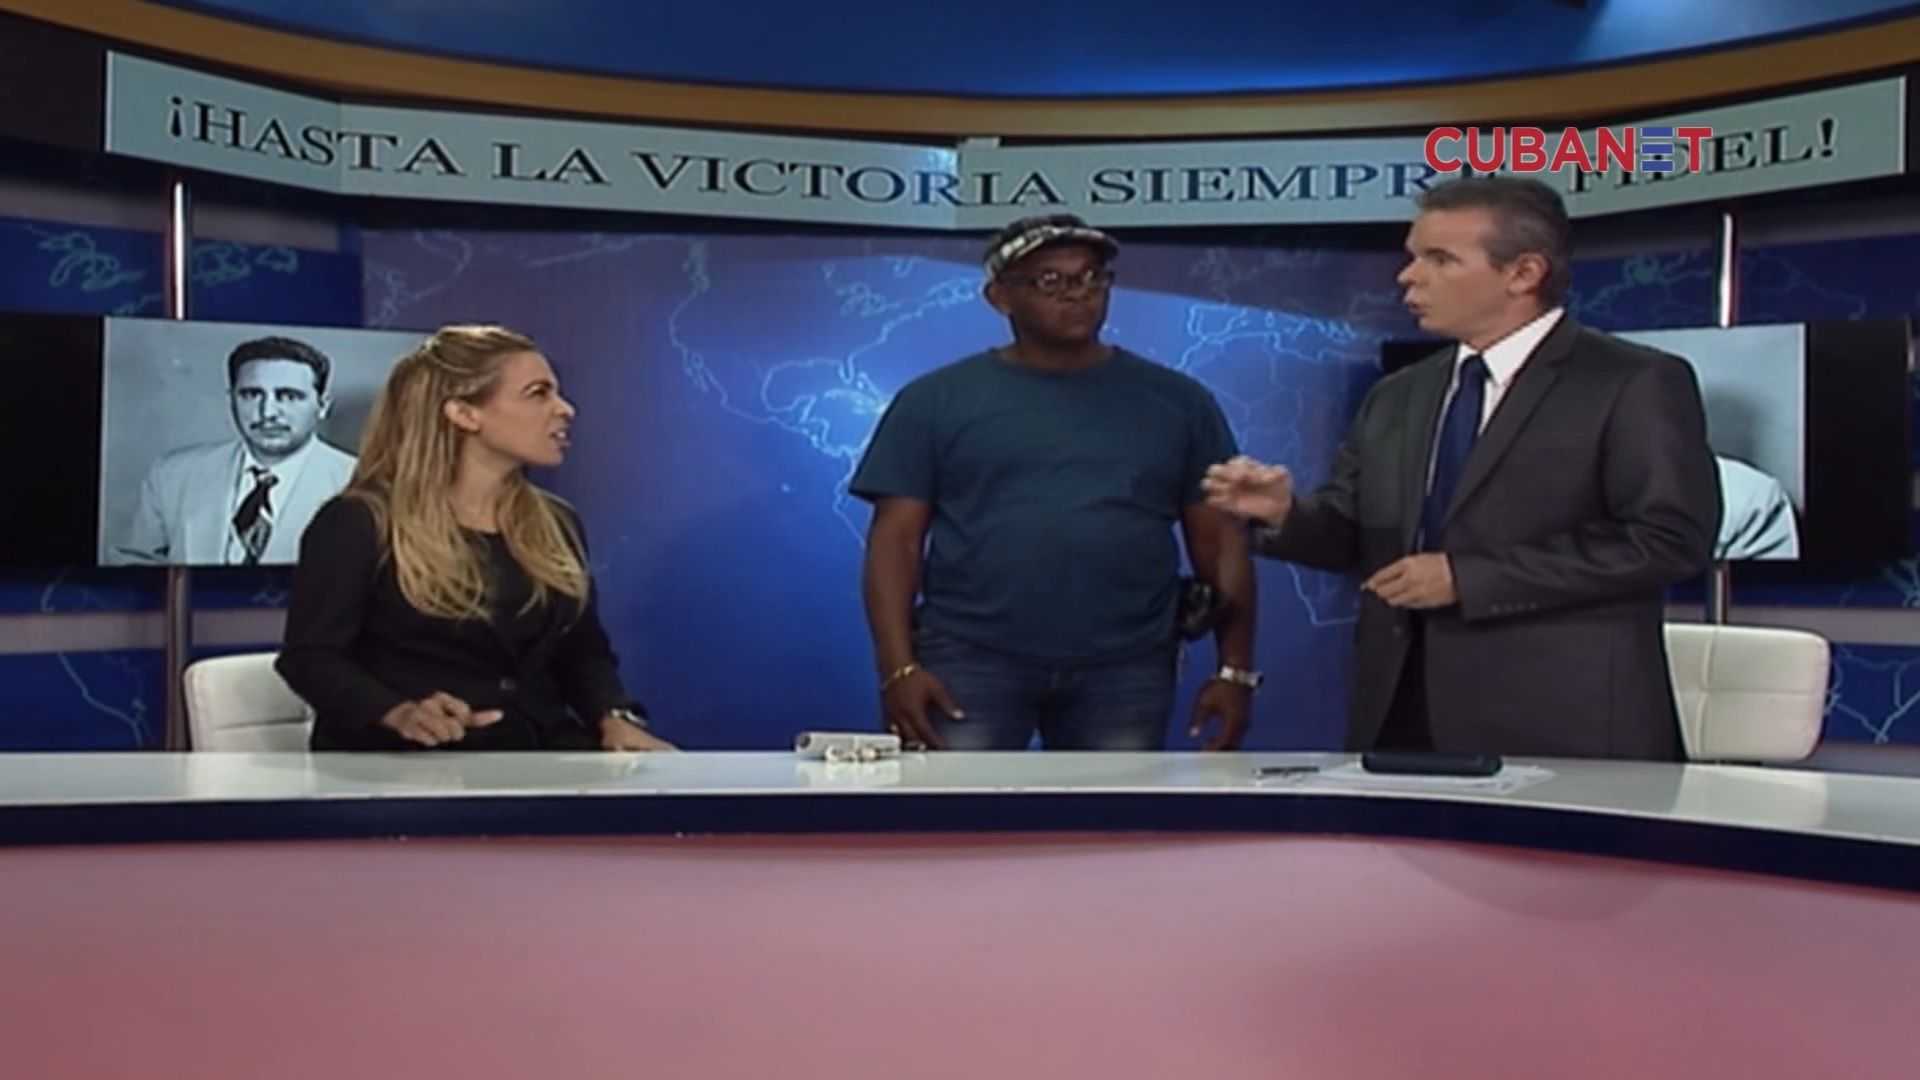 Prohíben los 'buenos días' en la televisión cubana